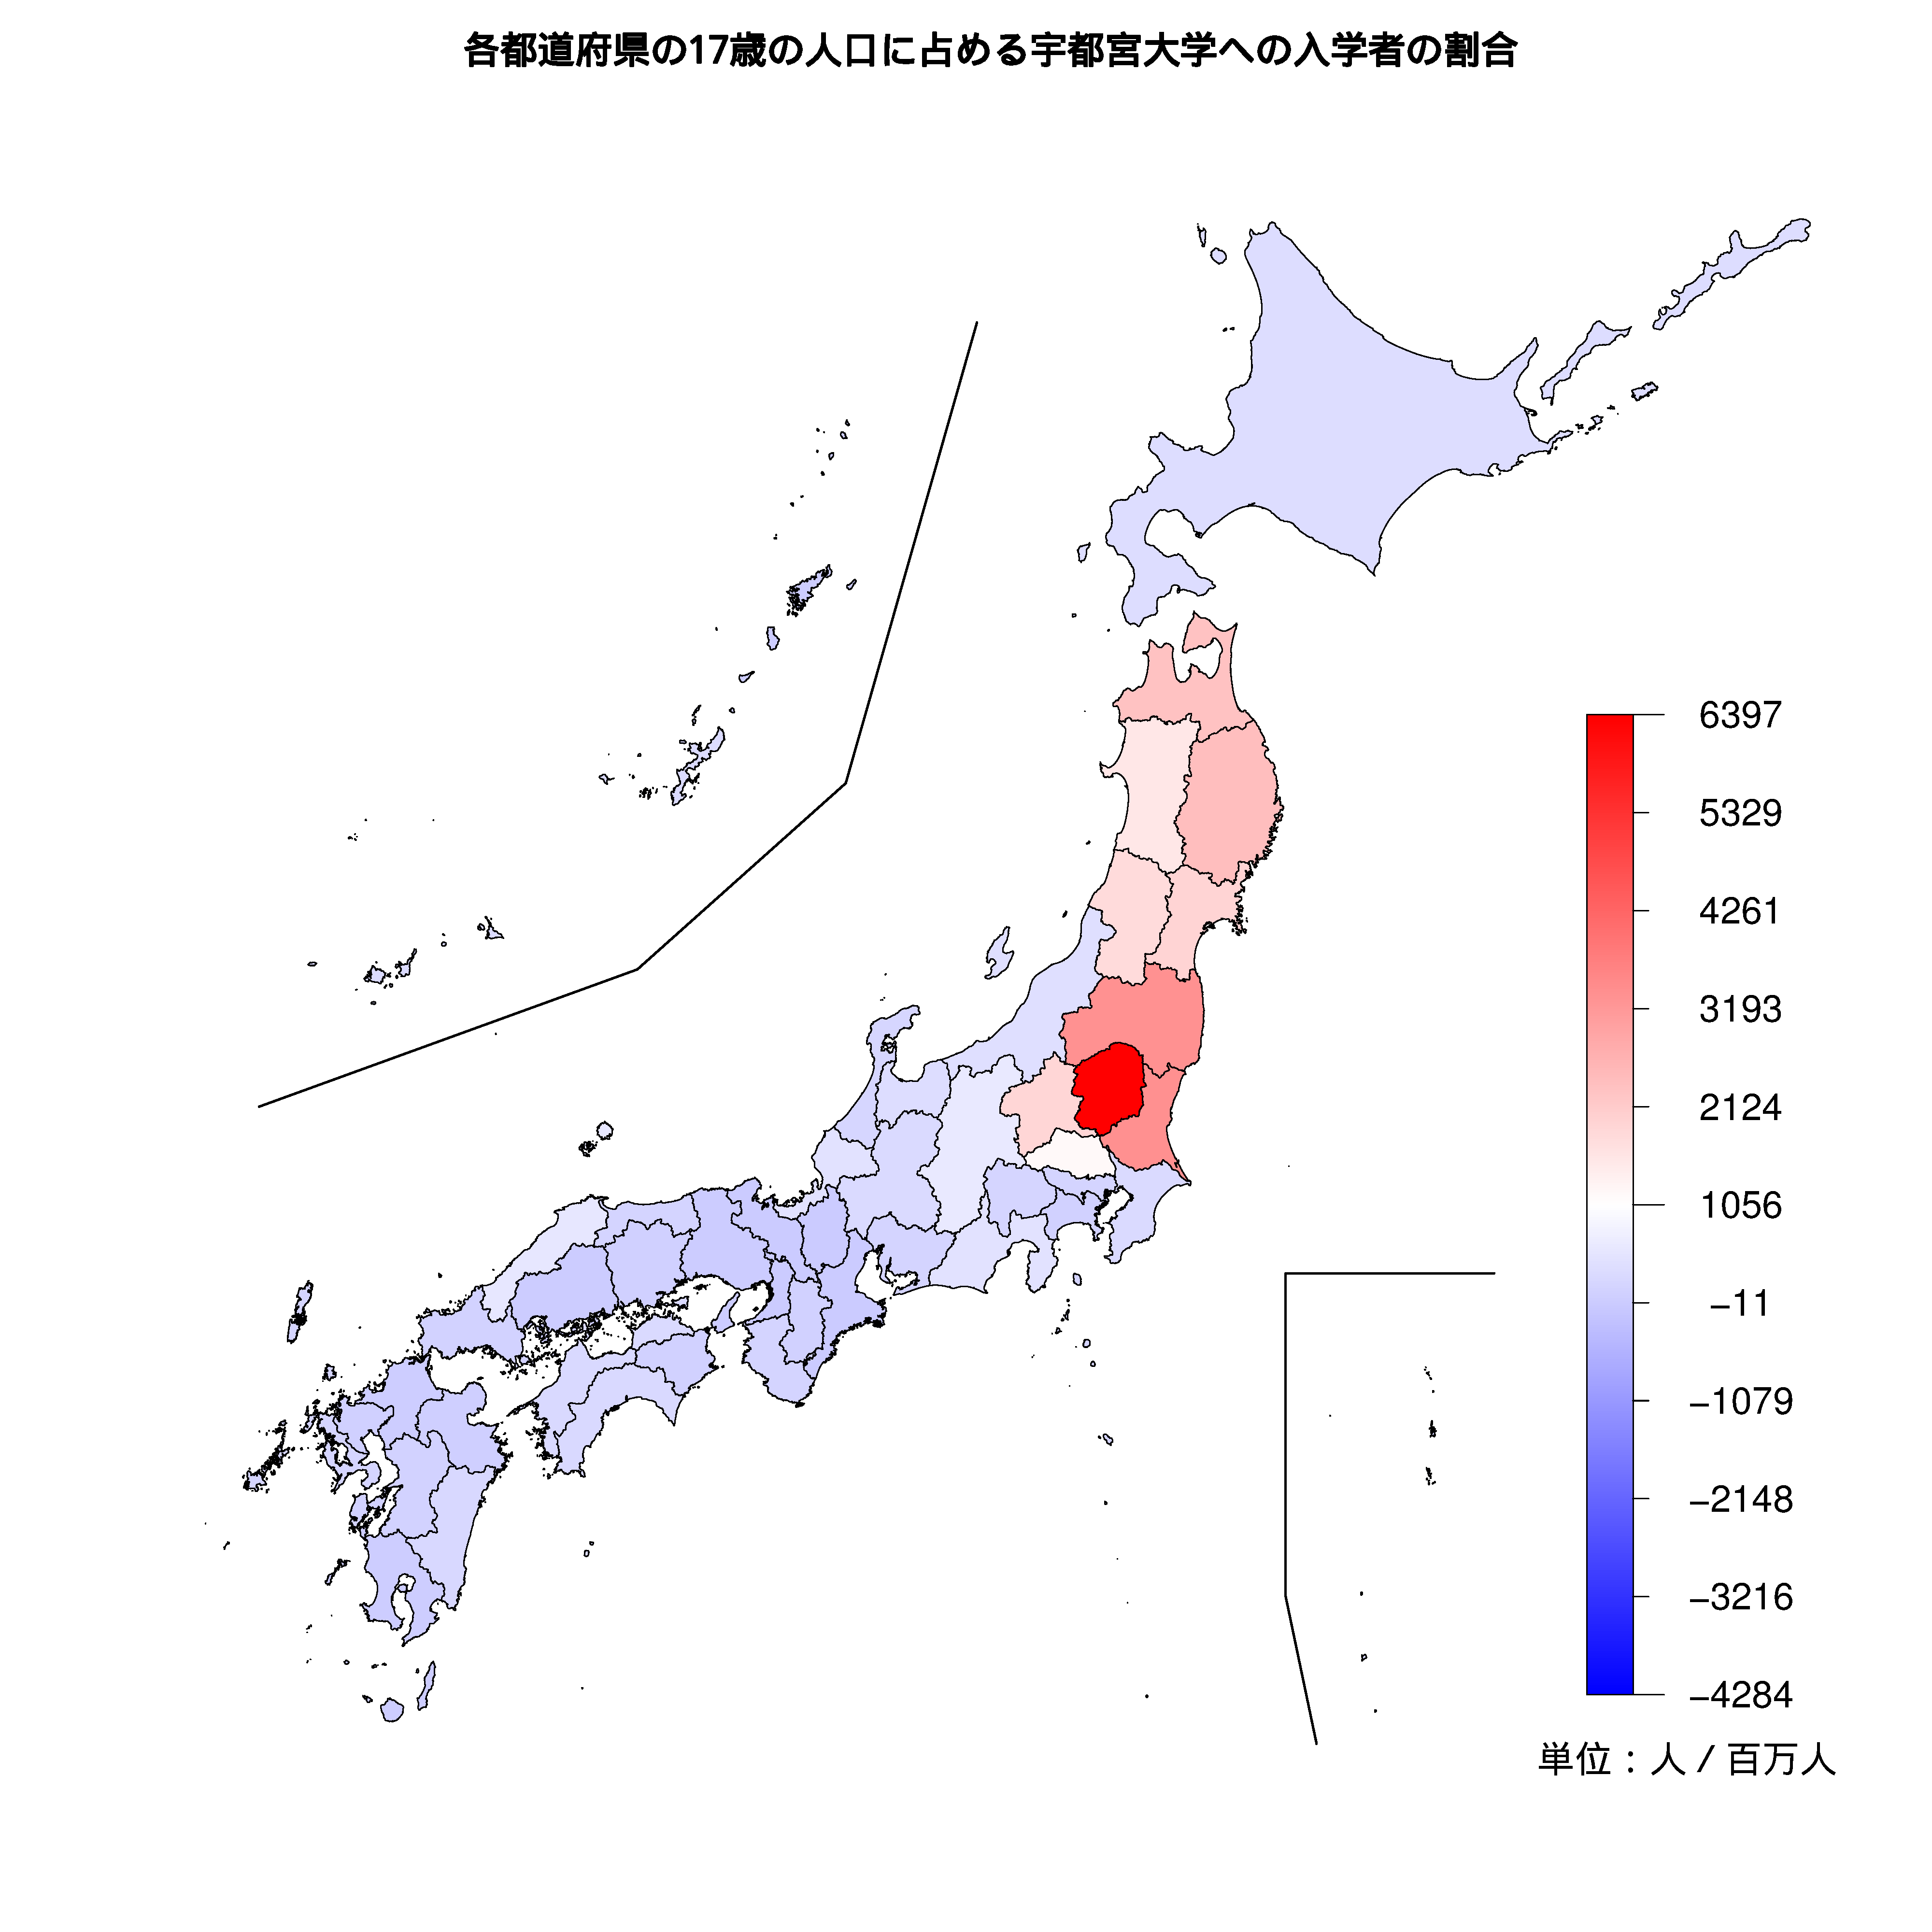 宇都宮大学への入学者が多い都道府県の色分け地図